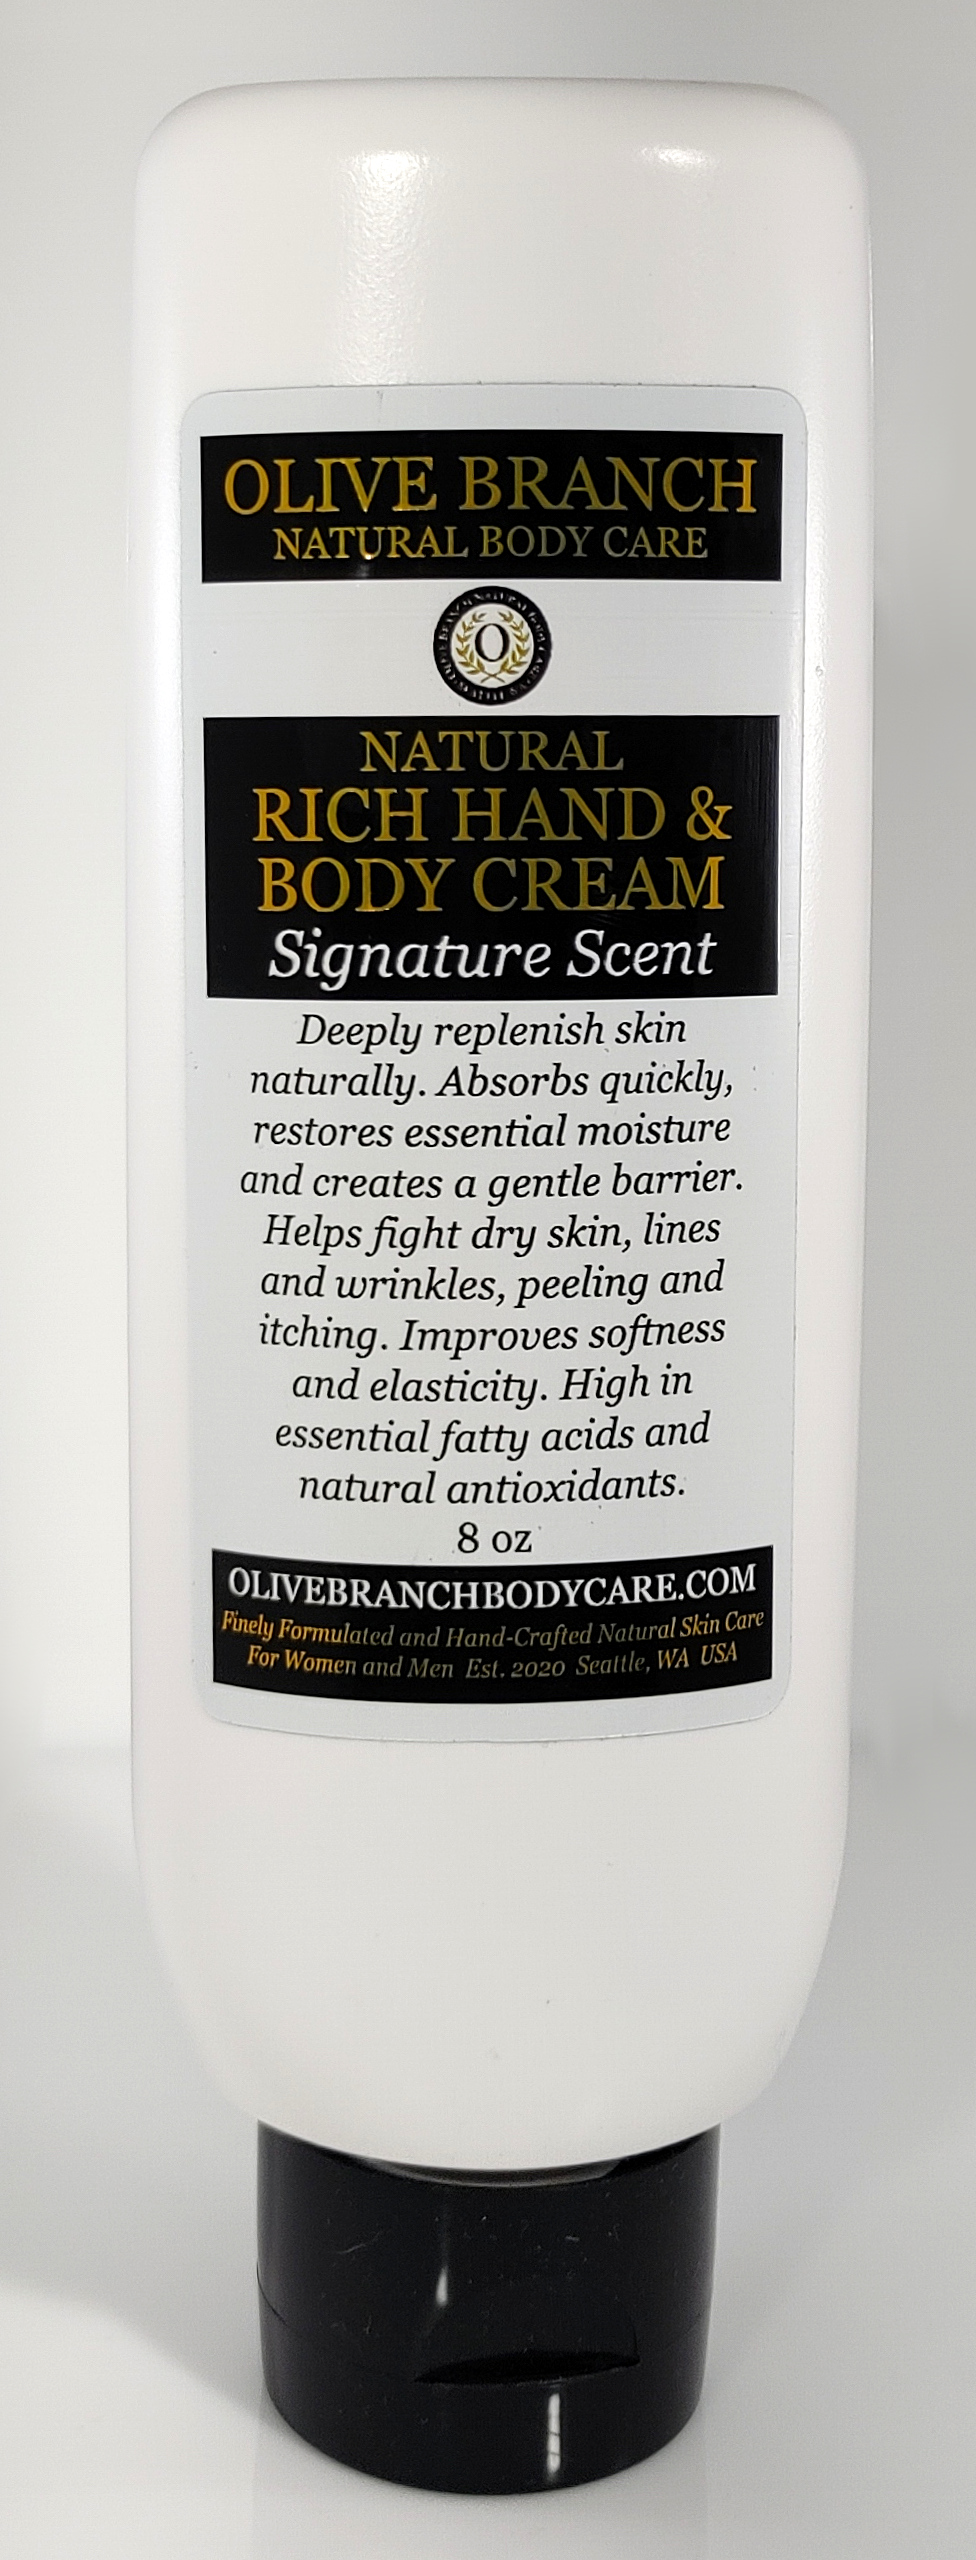 Rich Hand And Body Cream: Signature Scent